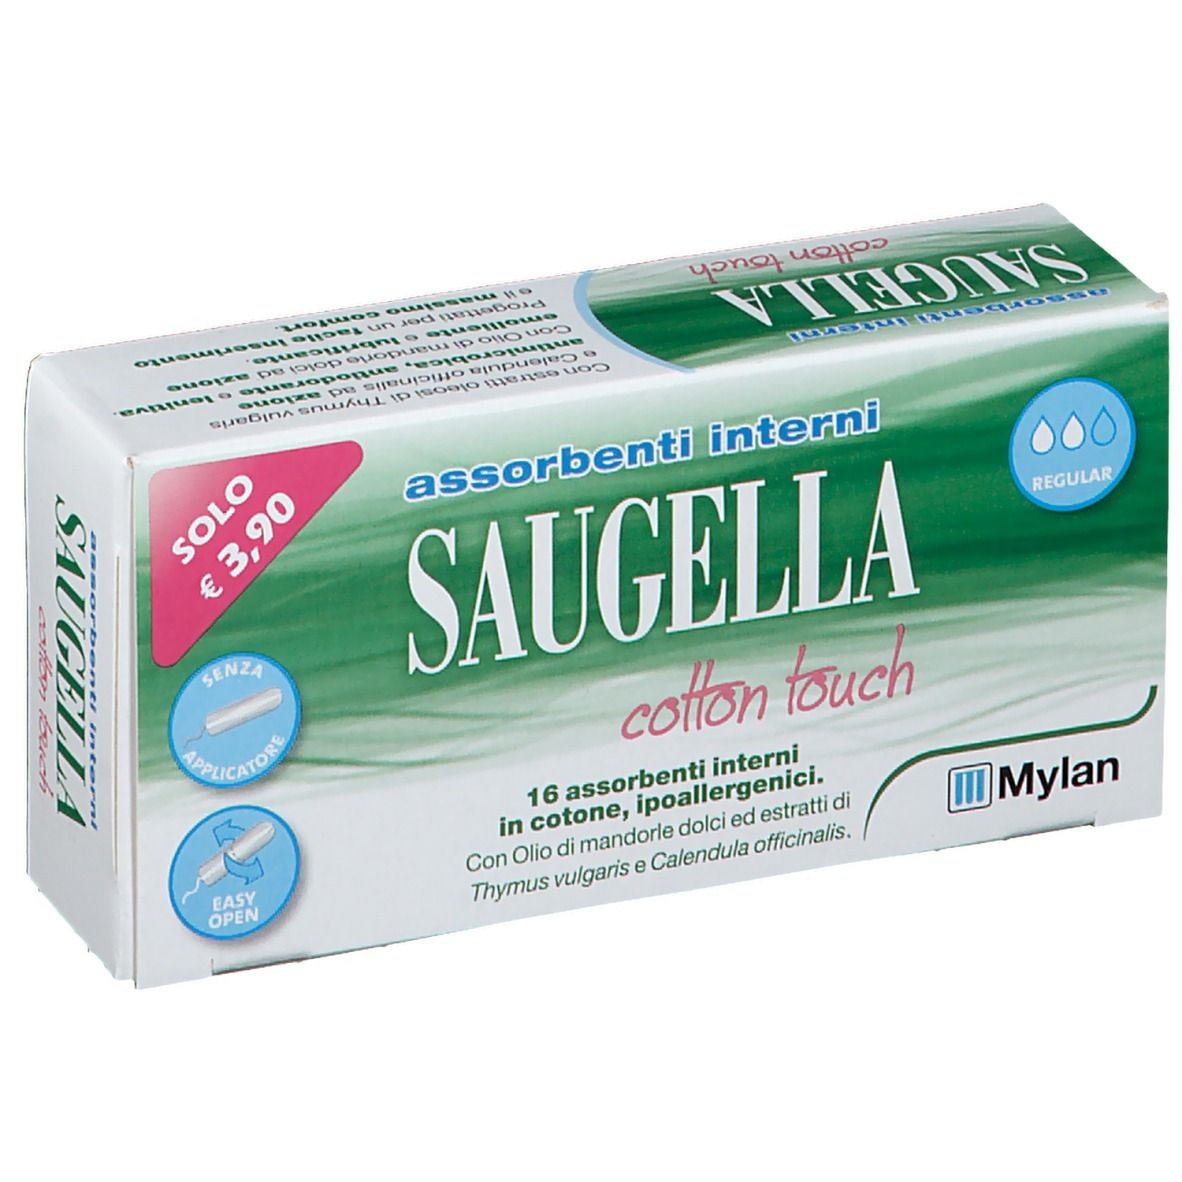  Saugella® Cotton Touch Assorbenti Interni